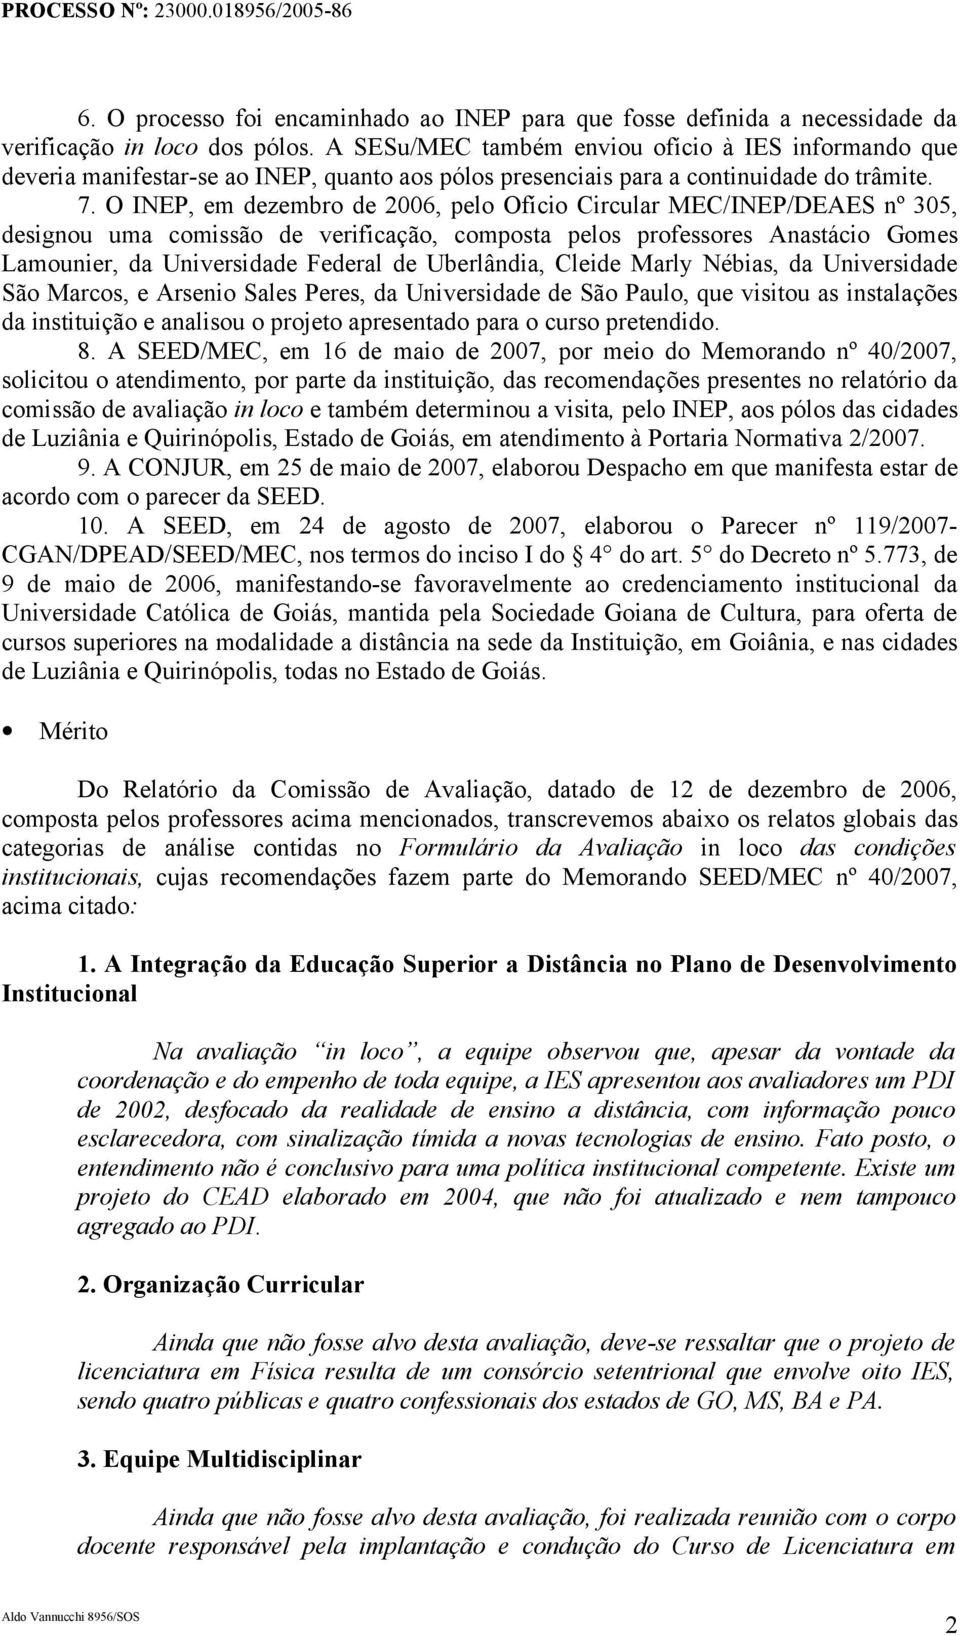 O INEP, em dezembro de 2006, pelo Ofício Circular MEC/INEP/DEAES nº 305, designou uma comissão de verificação, composta pelos professores Anastácio Gomes Lamounier, da Universidade Federal de